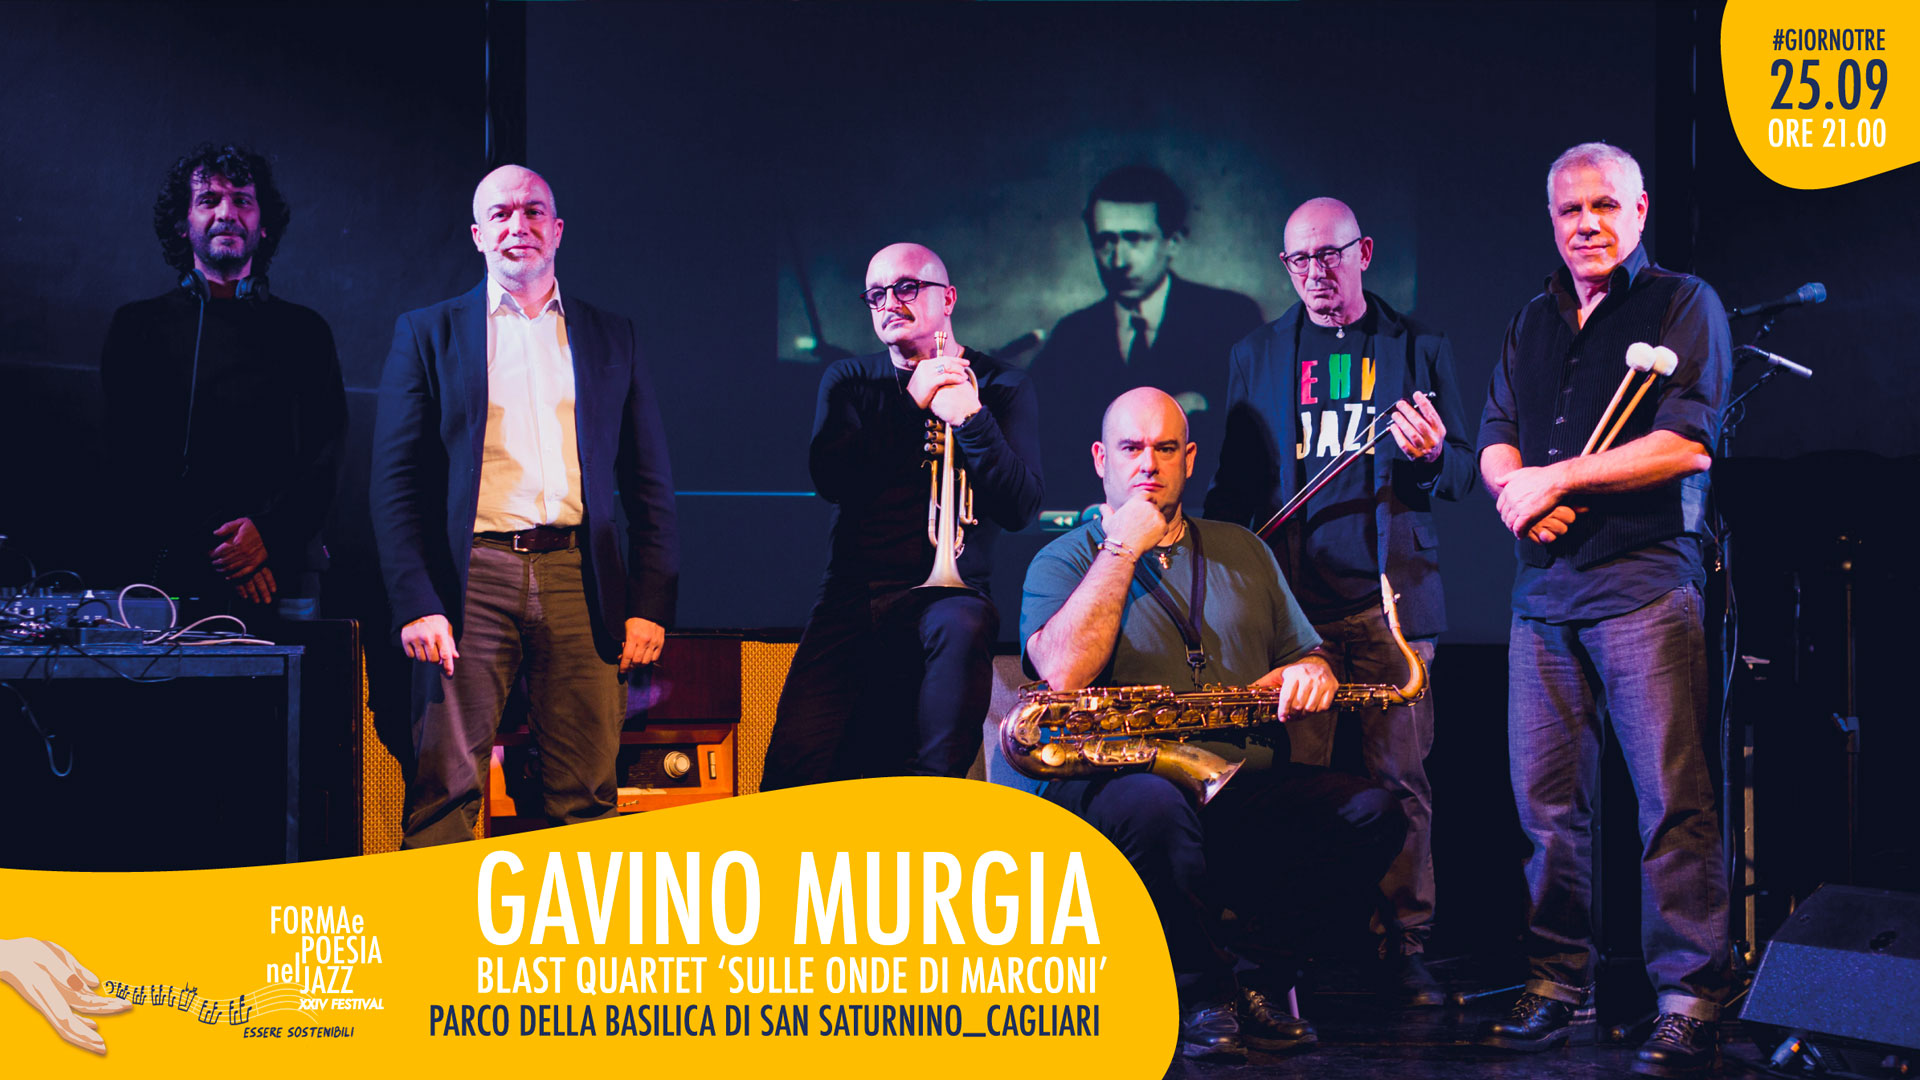 Pes e Ganau | 26-09-2021 | Parco della Basilica di San Saturnino - Cagliari - Forma e poesia nel jazz 2021